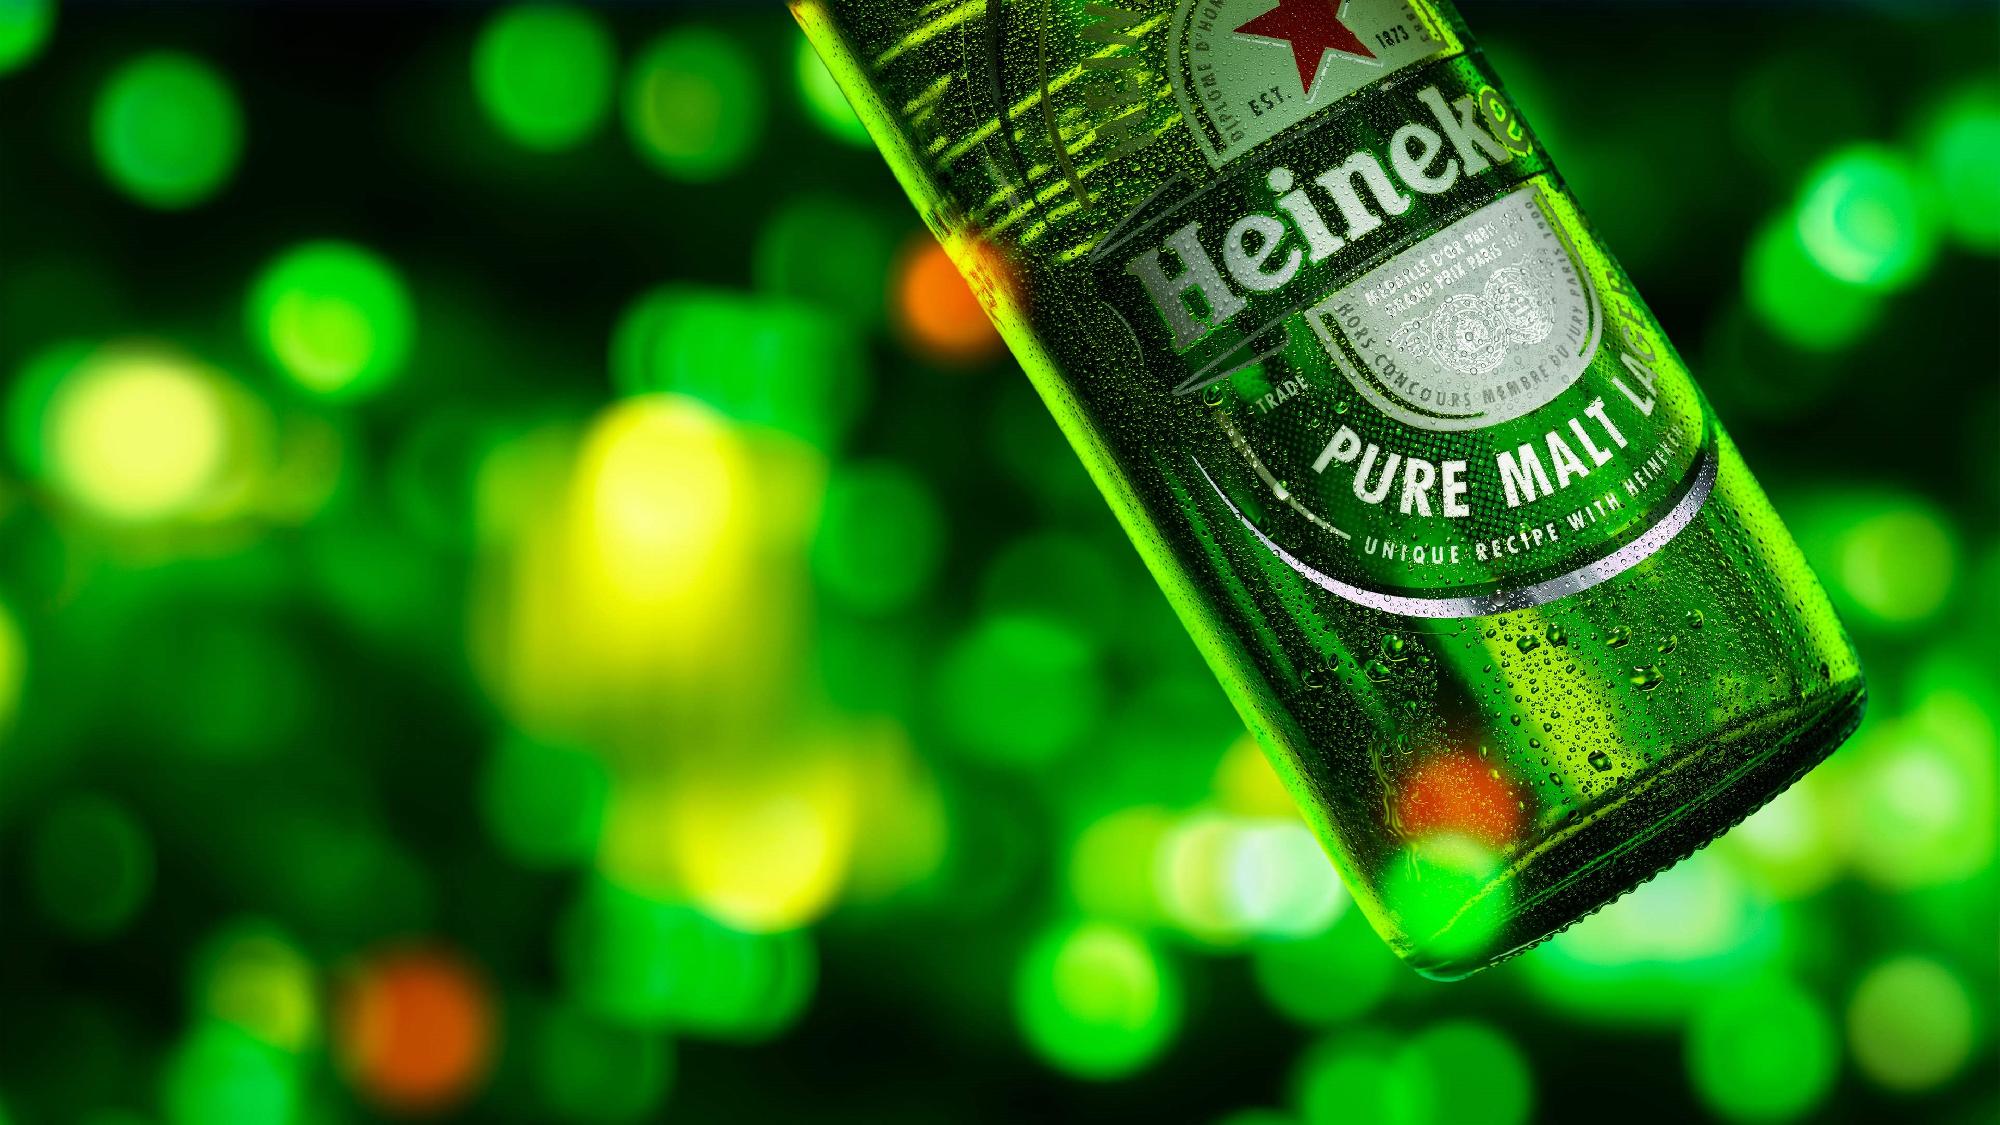 A Heineken 1 euróért eladta oroszországi érdekeltségeit